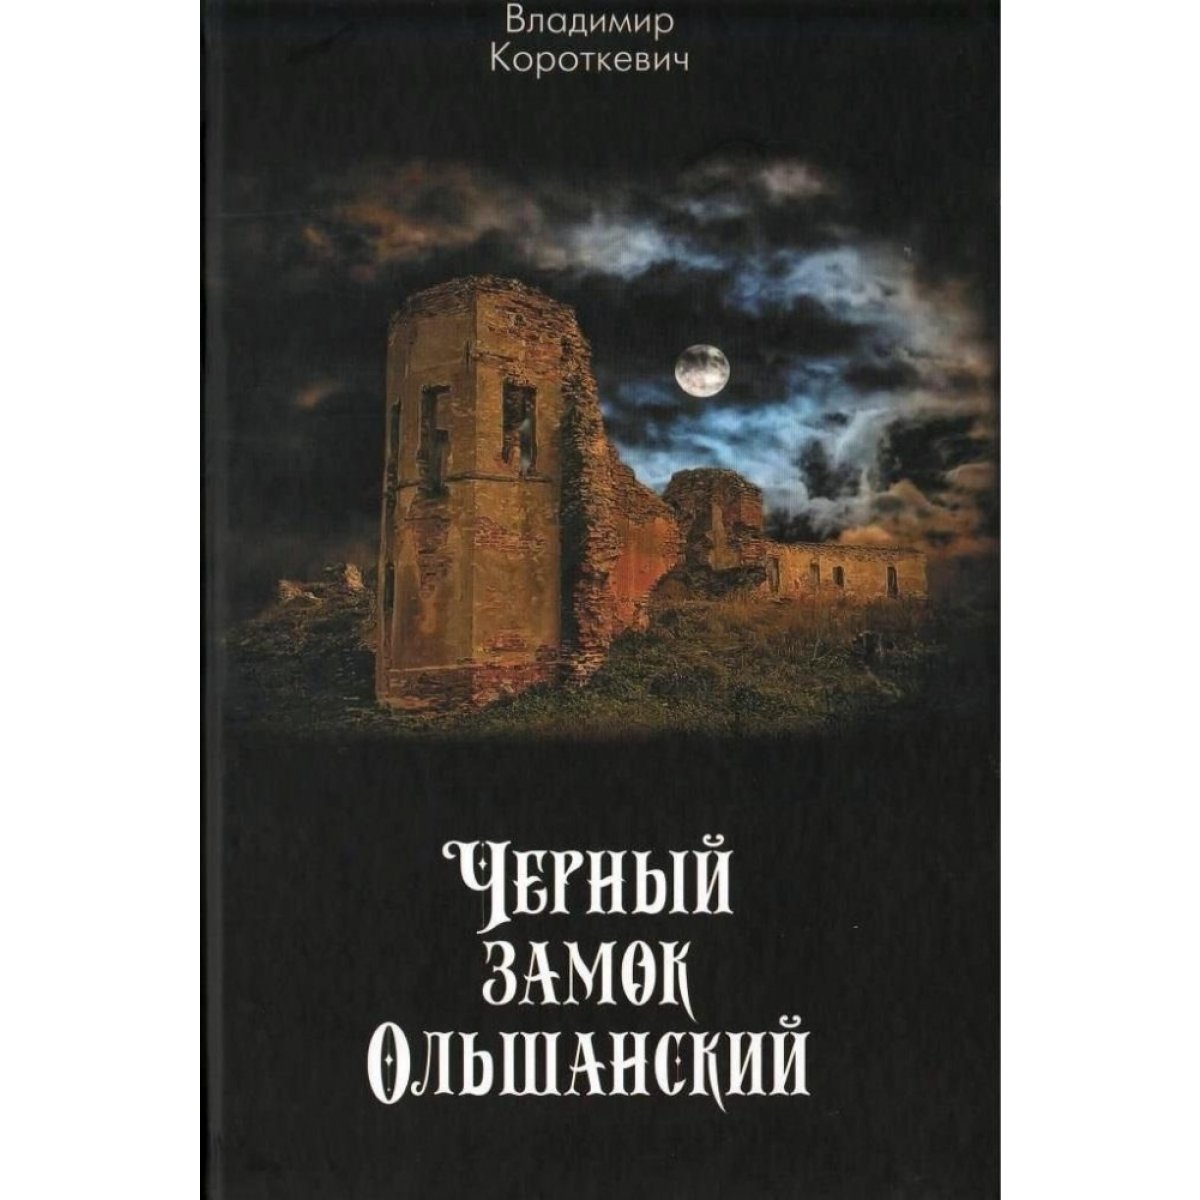 Замок ольшанский книга